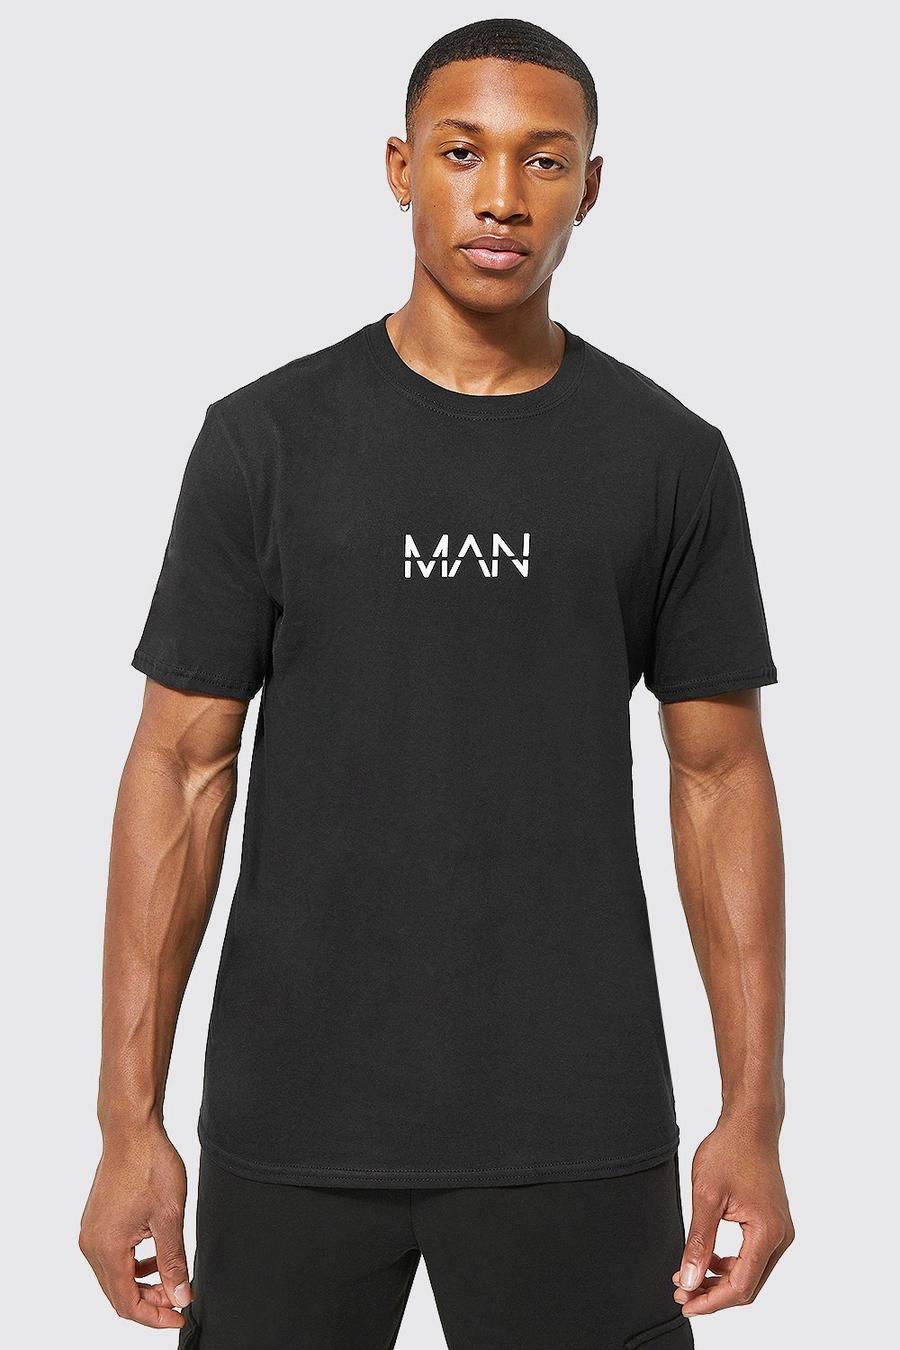 Camiseta MAN Original, Black negro